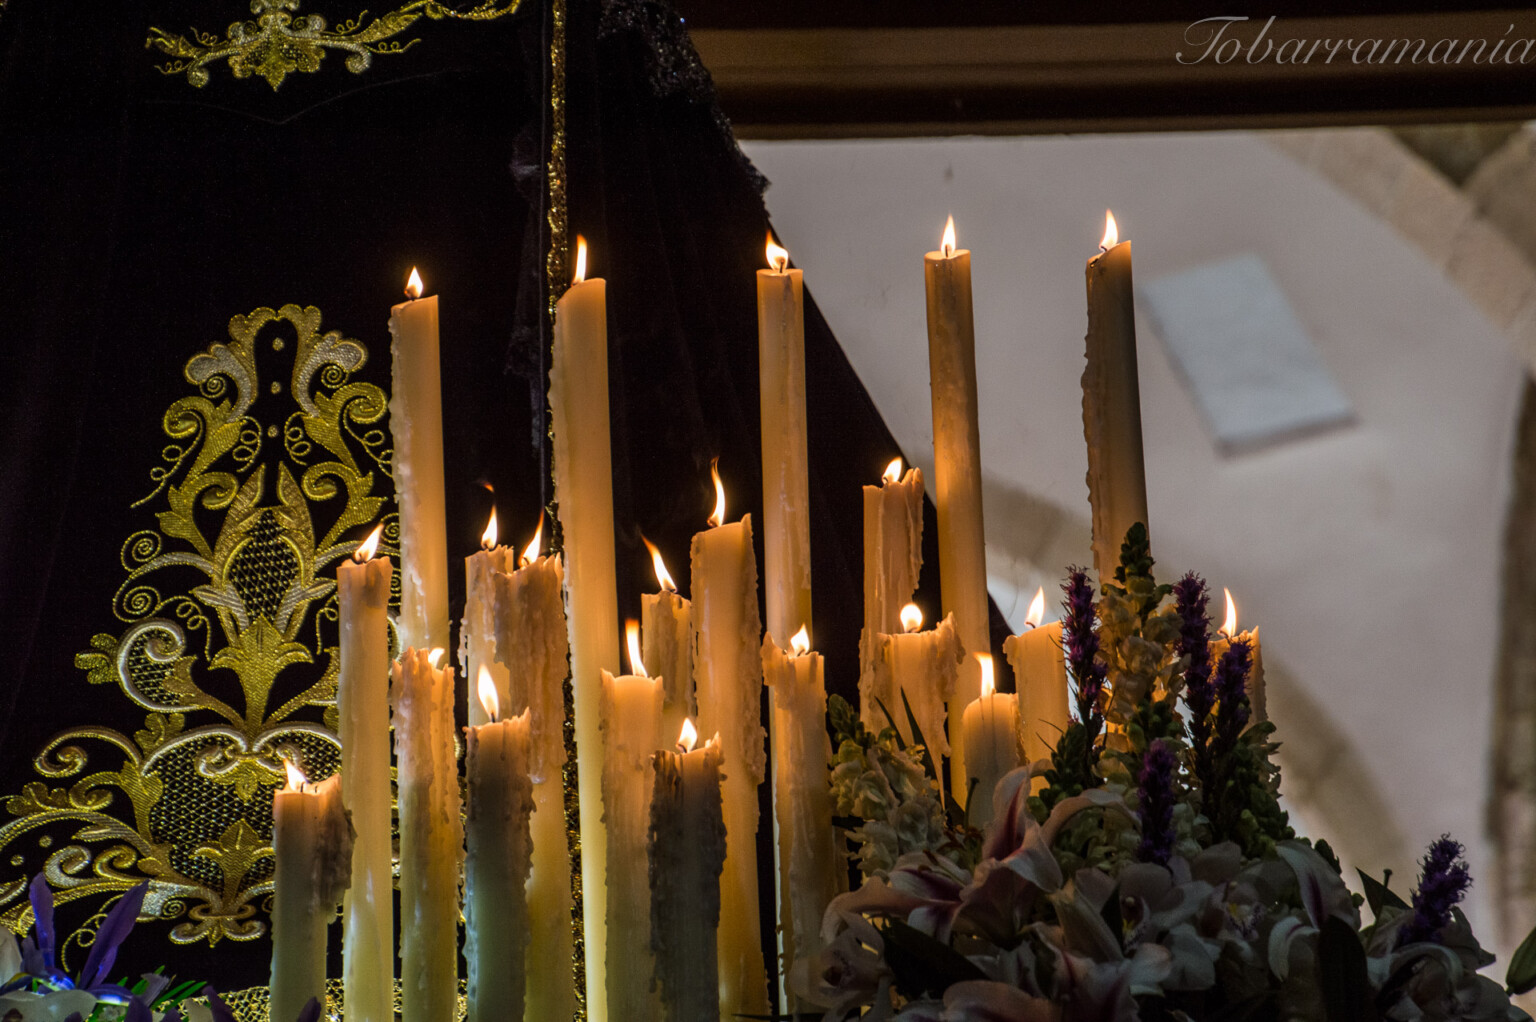 Velas en un trono en la Procesión el Entierro de la Semana Santa de Tobarra. Año 2015